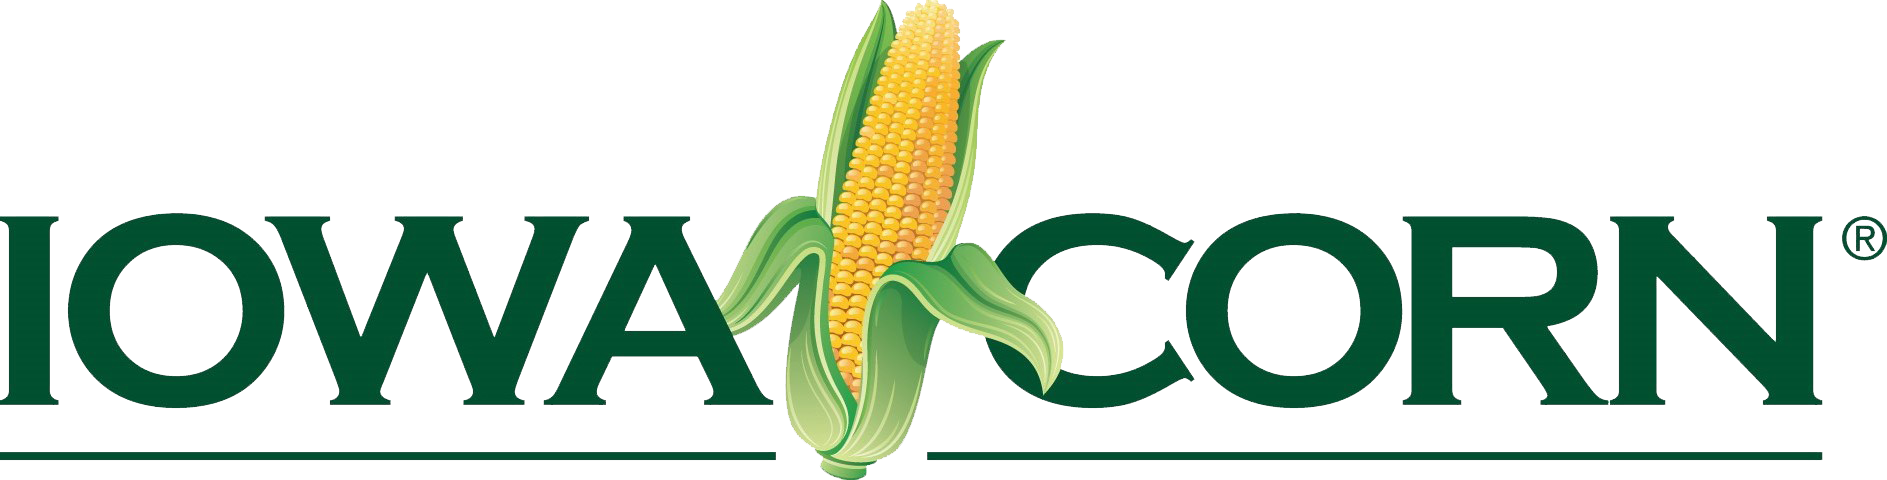 Iowa Corn Growers Association